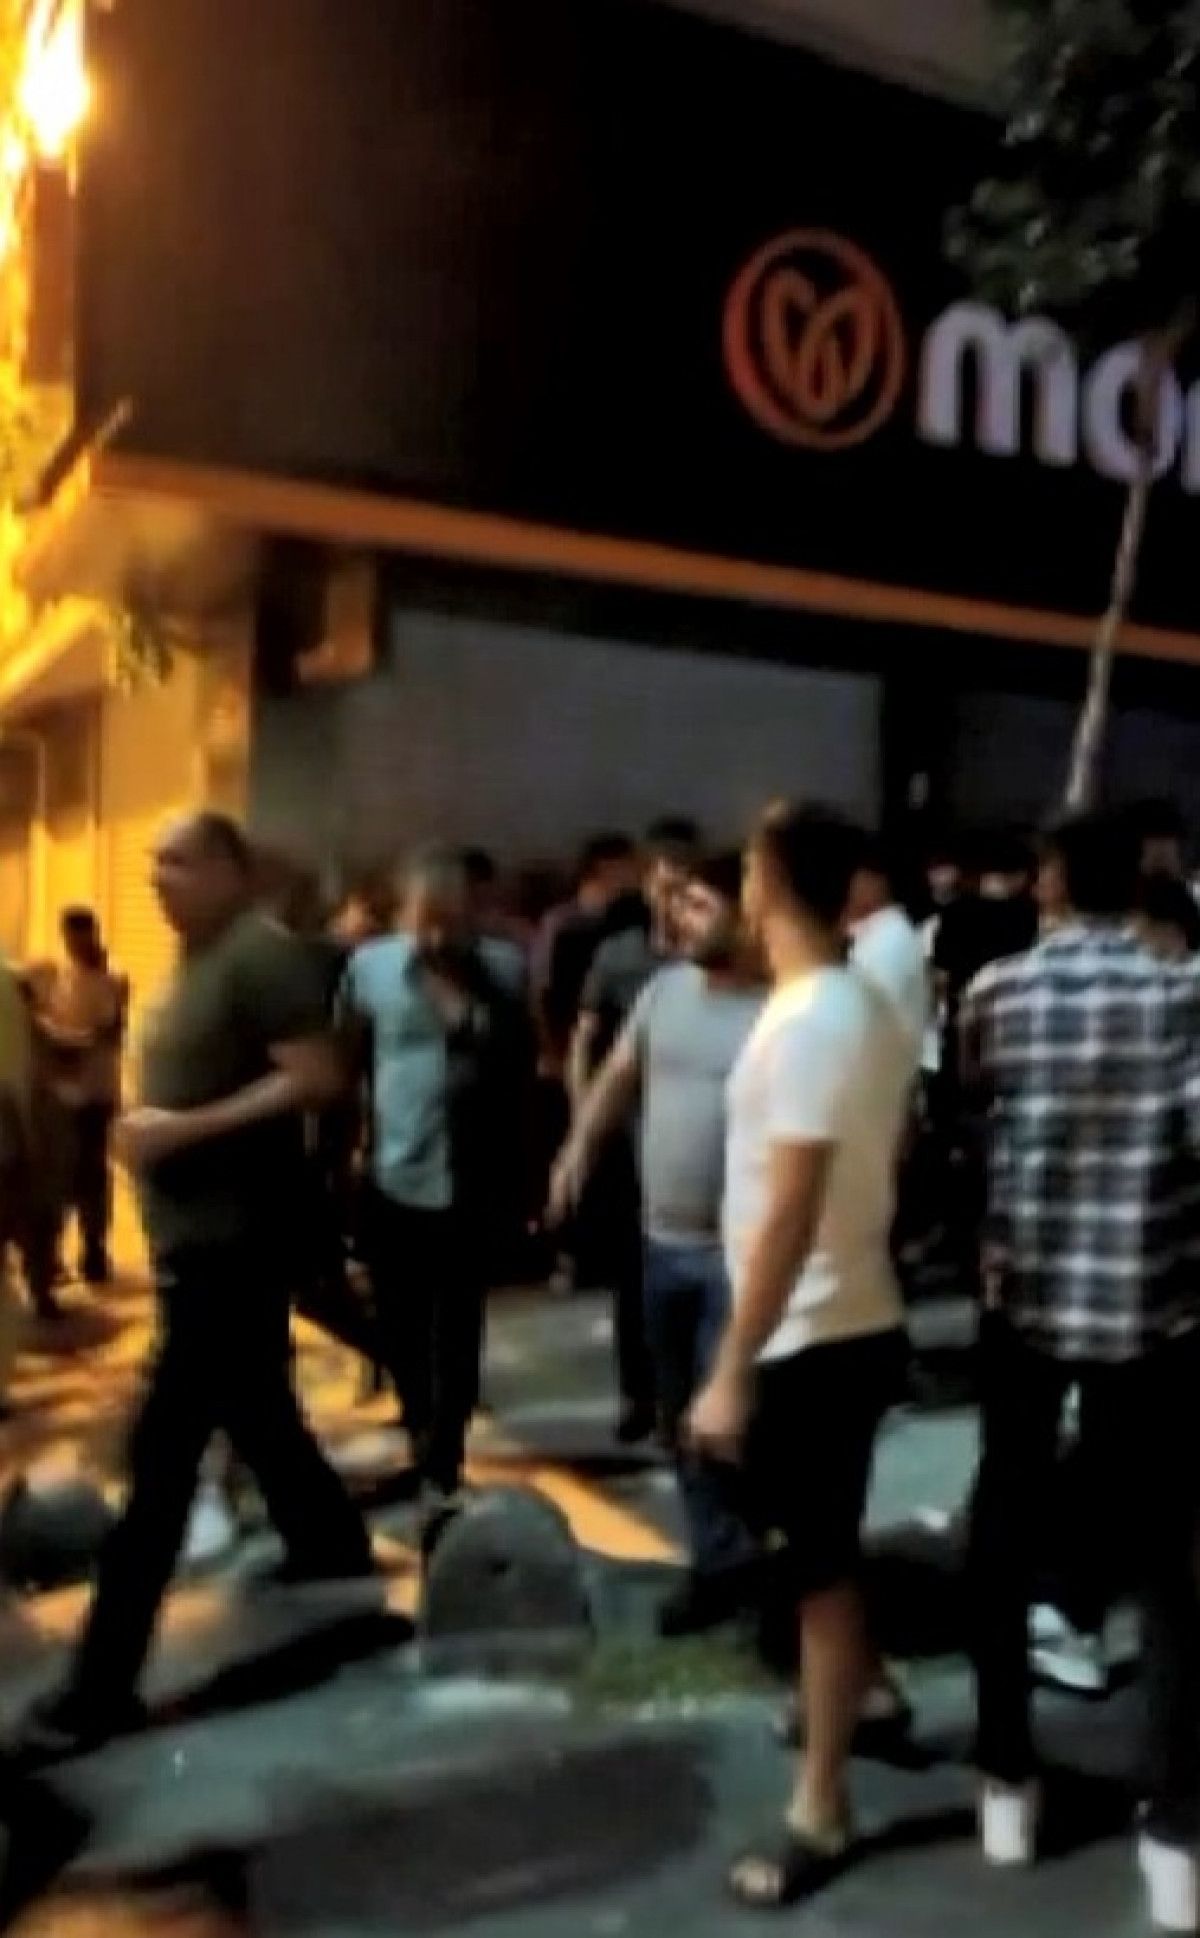 İstanbul da yanlış anlaşılma yüzünden çıkan kız kaçırma iddiası mahalleyi karıştı #2